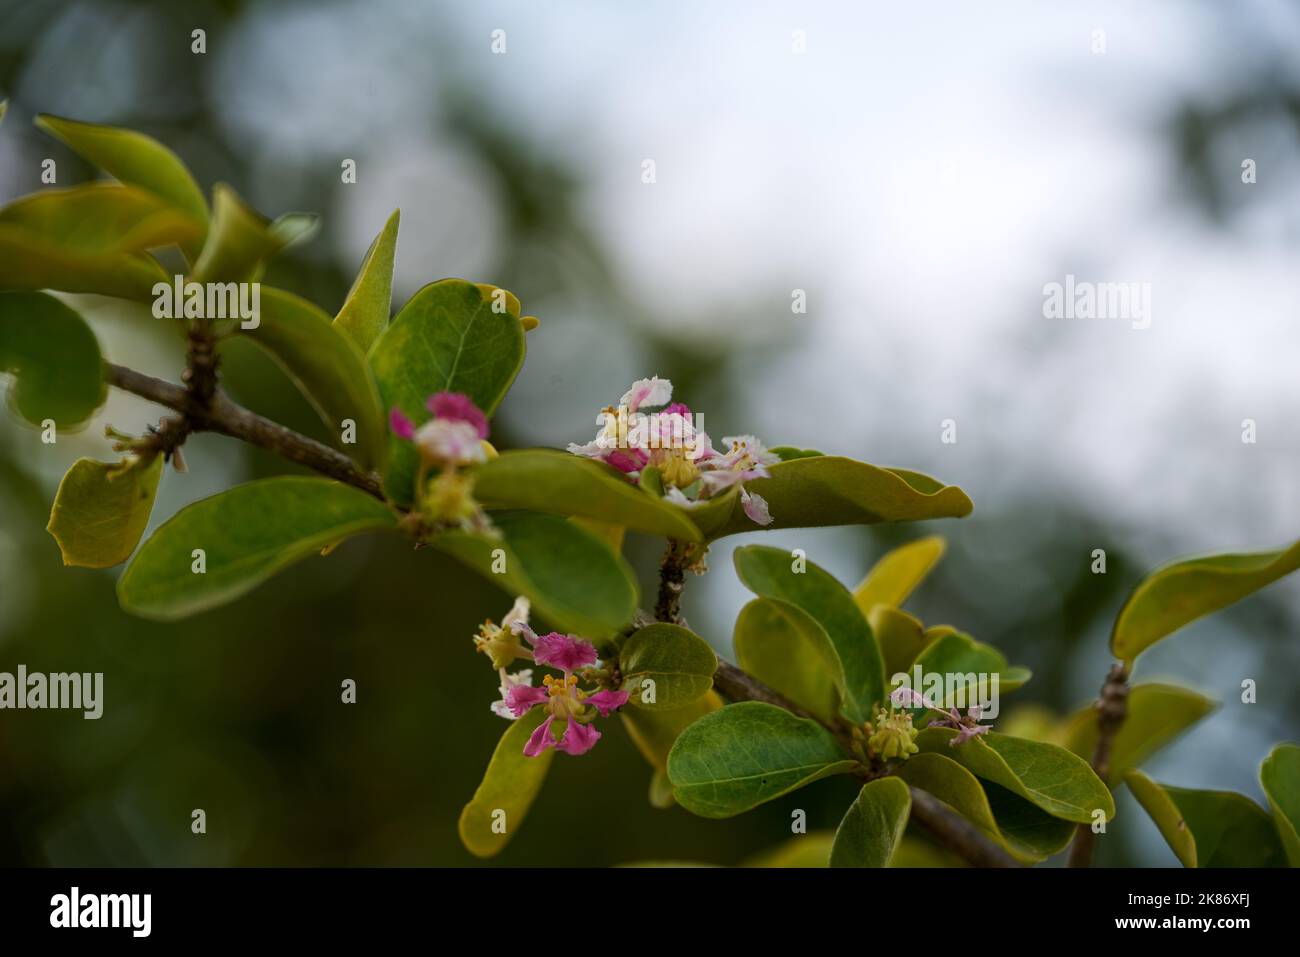 A selective focus shot of blooming barbados cherry (Malpighia glabra) in the garden Stock Photo